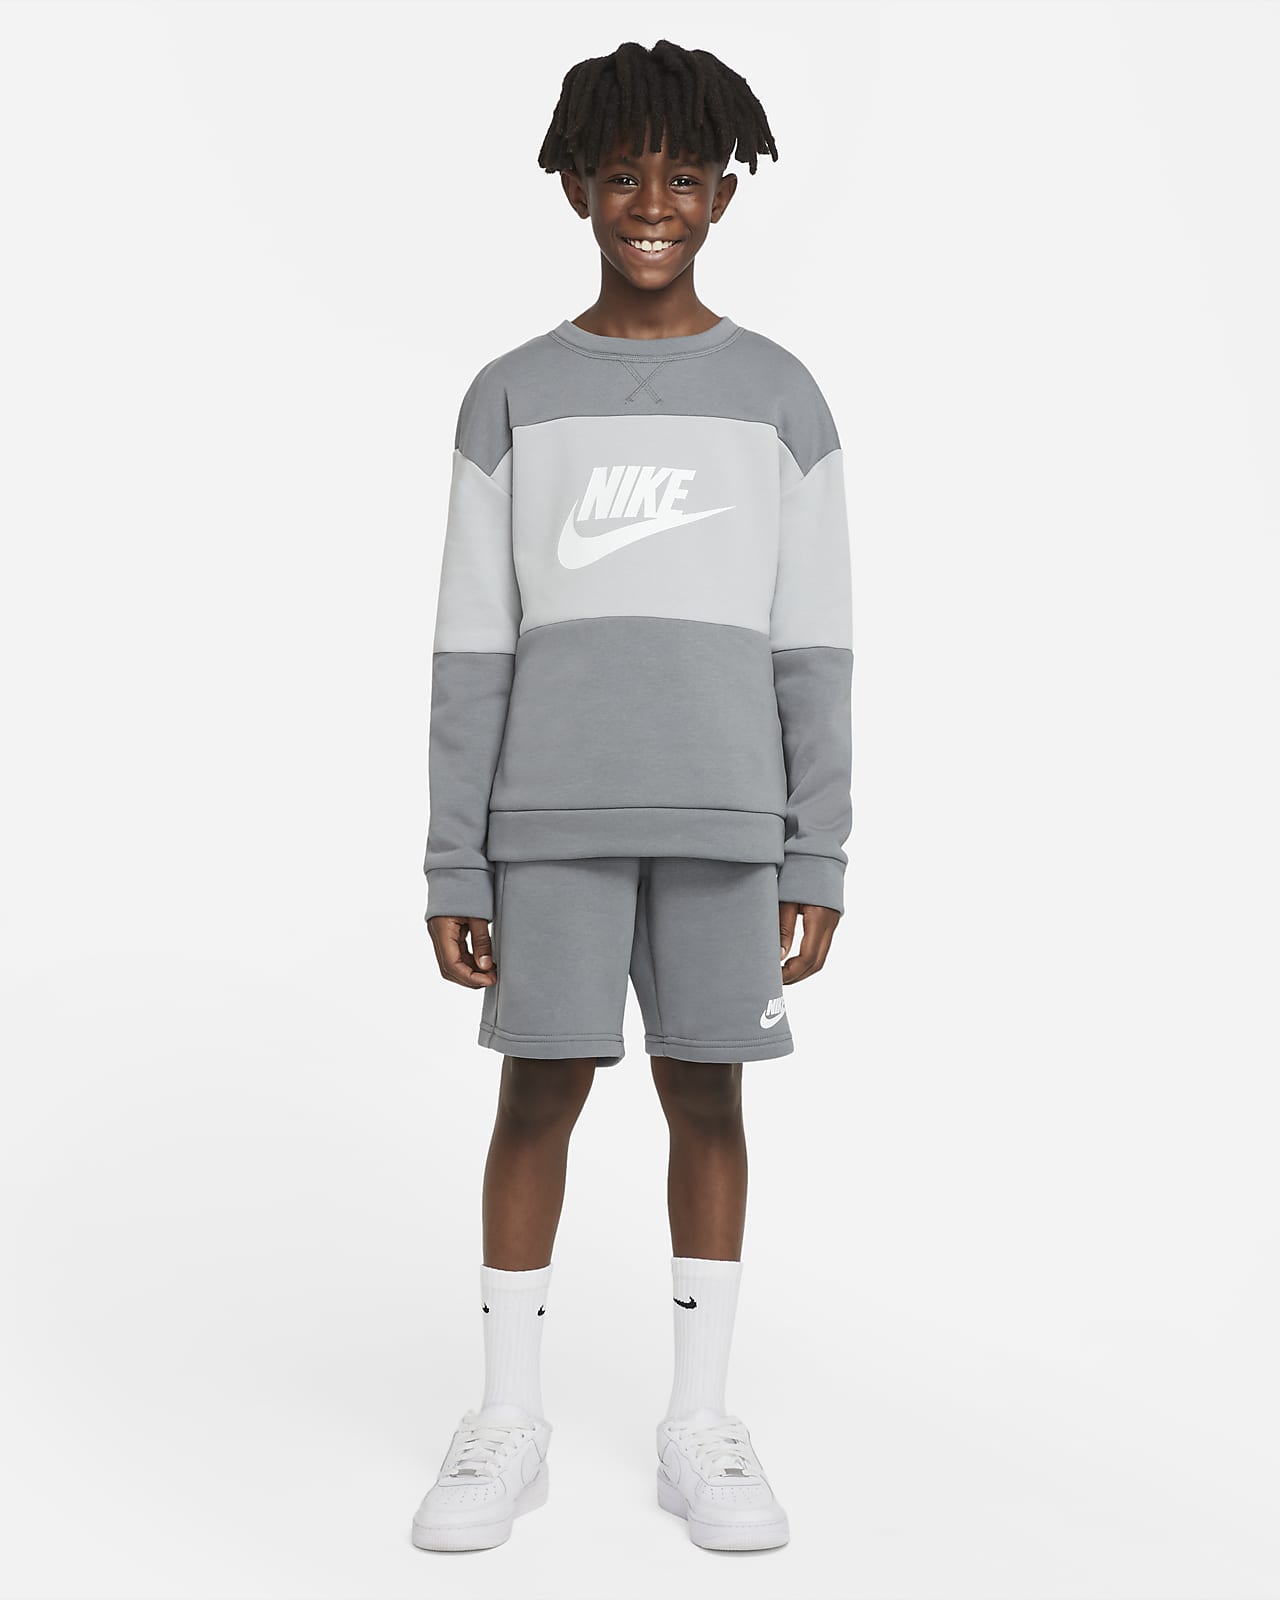 Φόρμα από ύφασμα French Terry Nike Sportswear για μεγάλα παιδιά